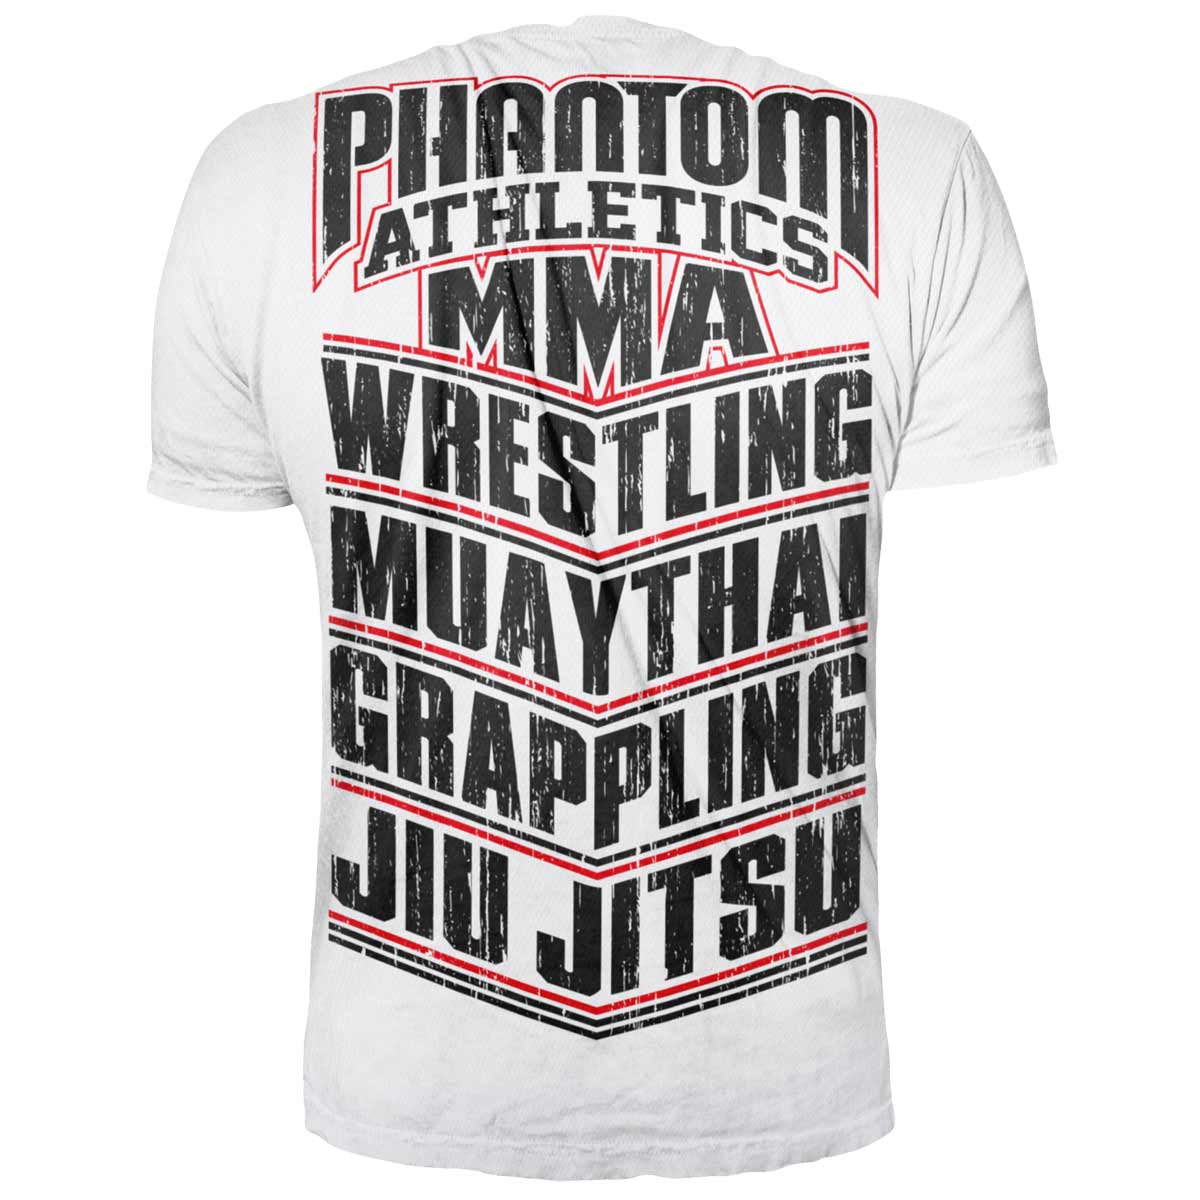 Phantom T-skjorte for alle kampsportutøvere. Med MMA, WESTLING, MUAY THAI, GRAPPLING, JIU JITSU-bokstaver. Ideell for kamptrening.